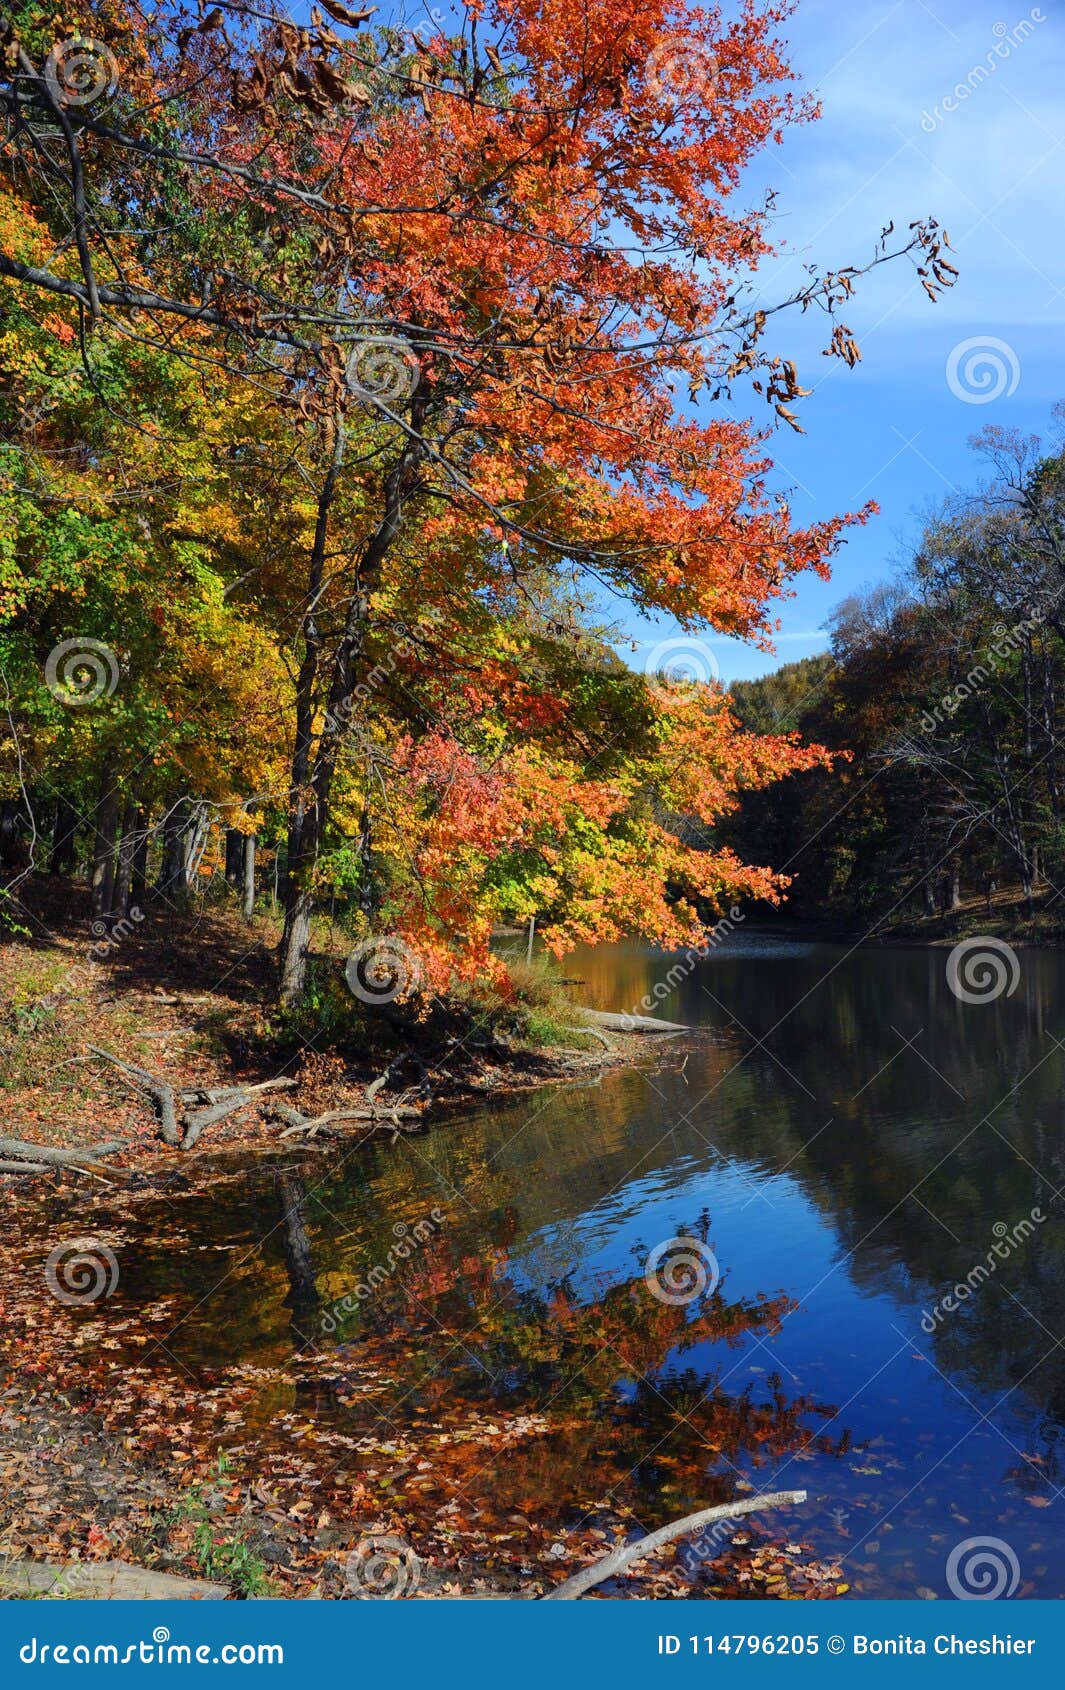 Autumn Landscape and Poplar Tree Lake Stock Image - Image of serene ...